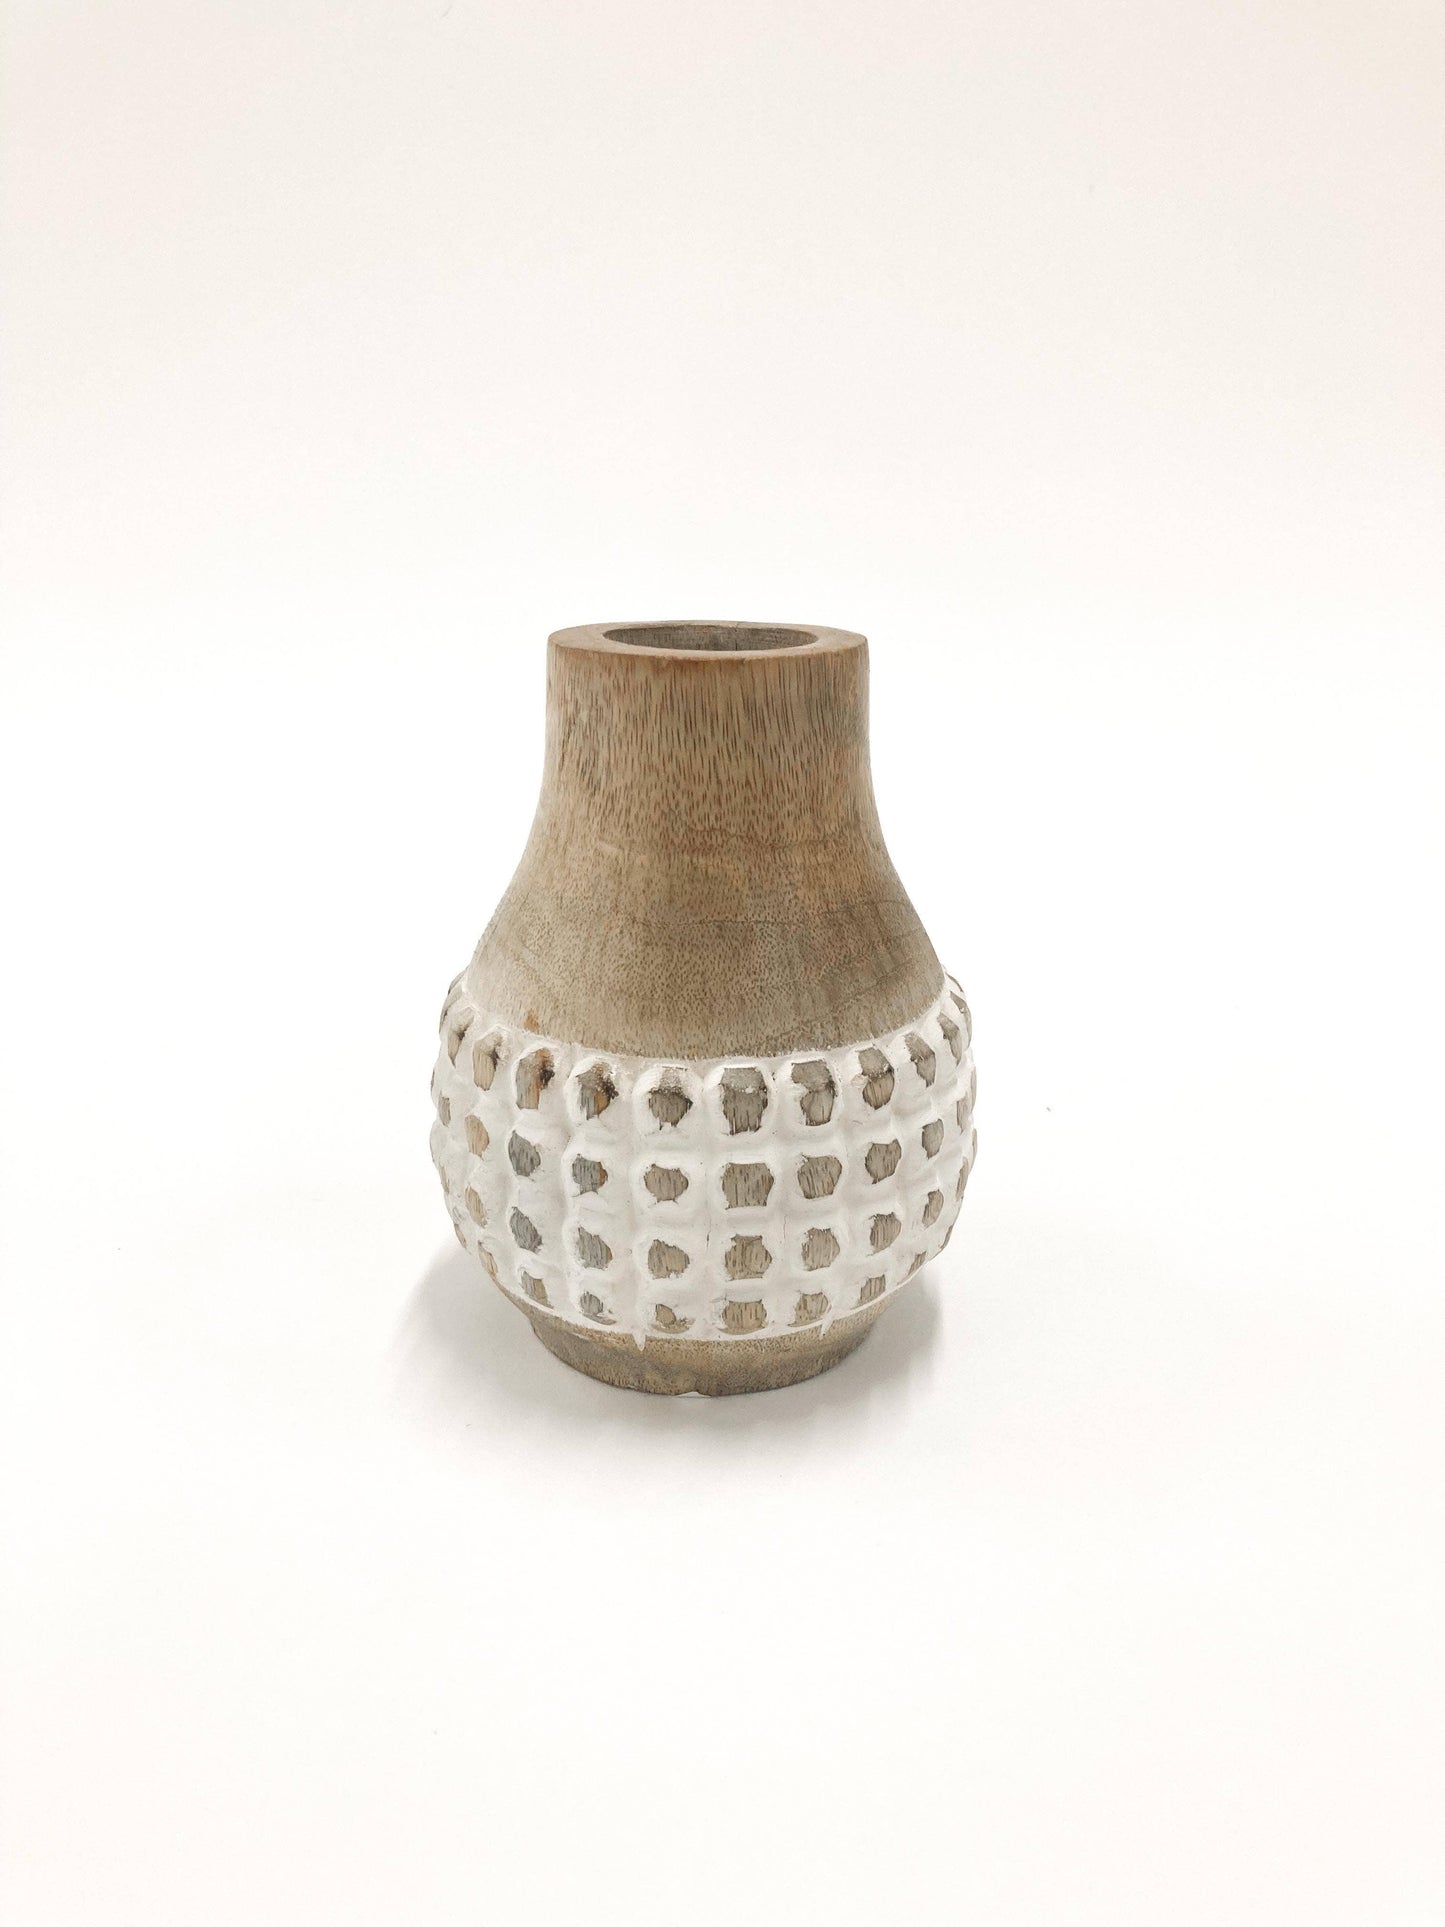 Checkered Bulb Vase - 4.25"